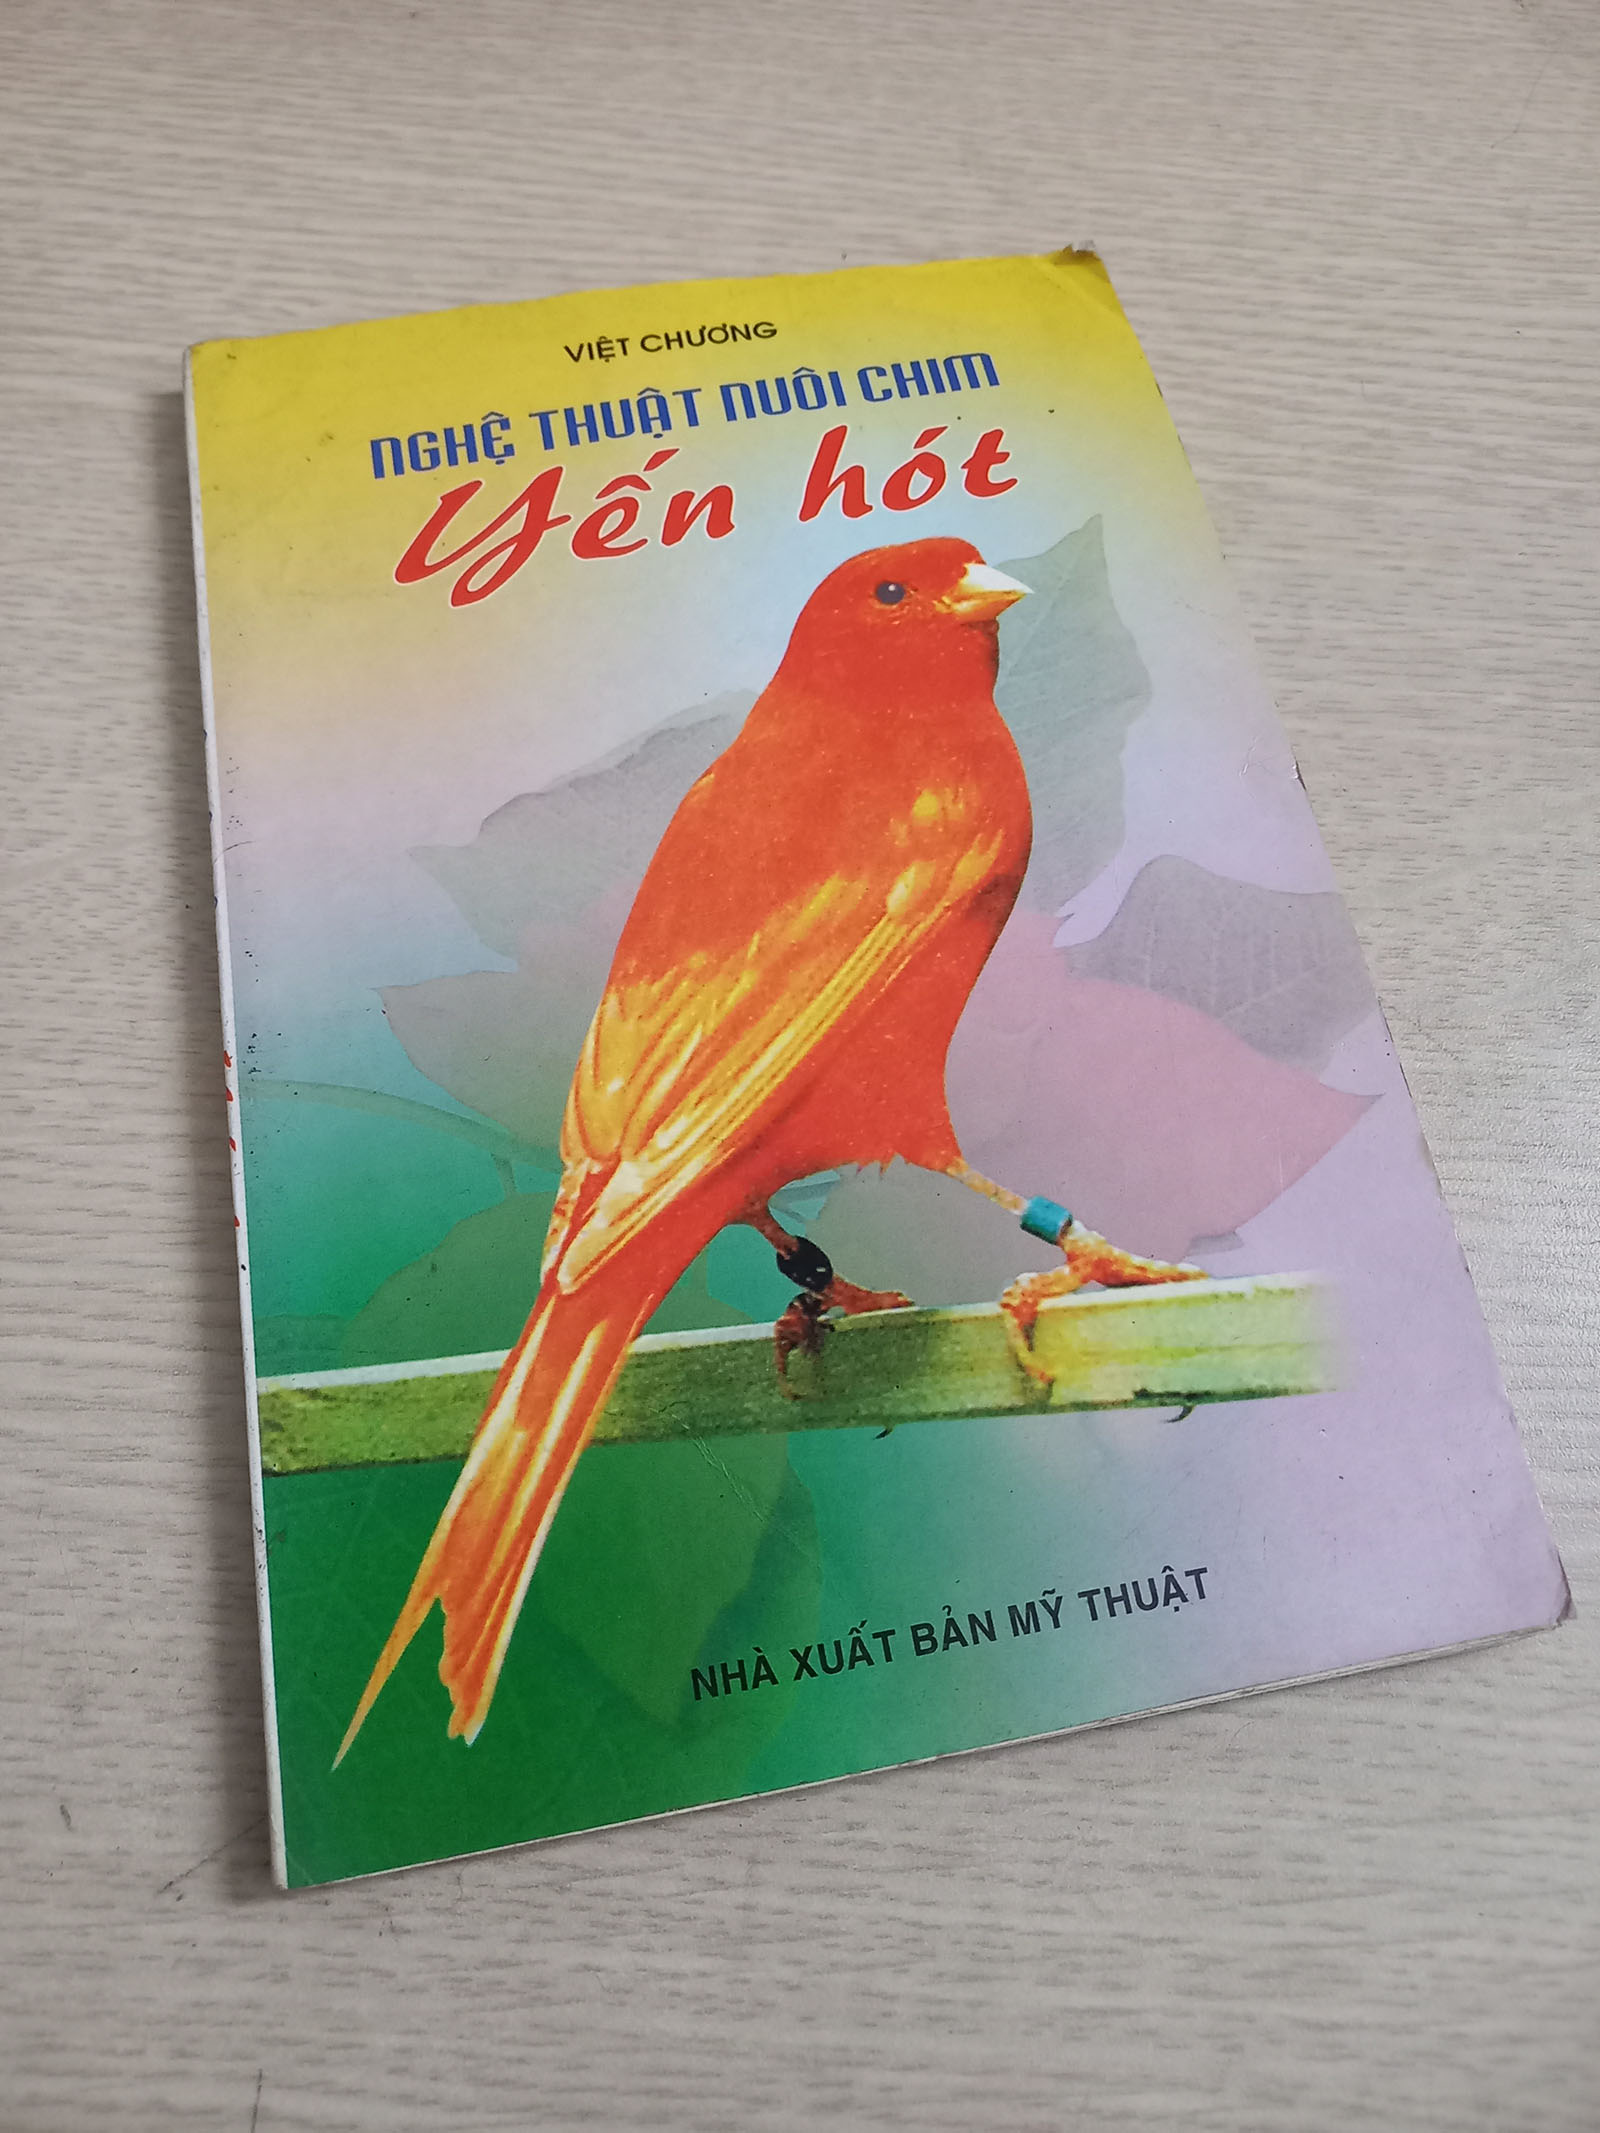 Bìa sách Nghẹ thuật nuôi chim yến hót của Việt Chương